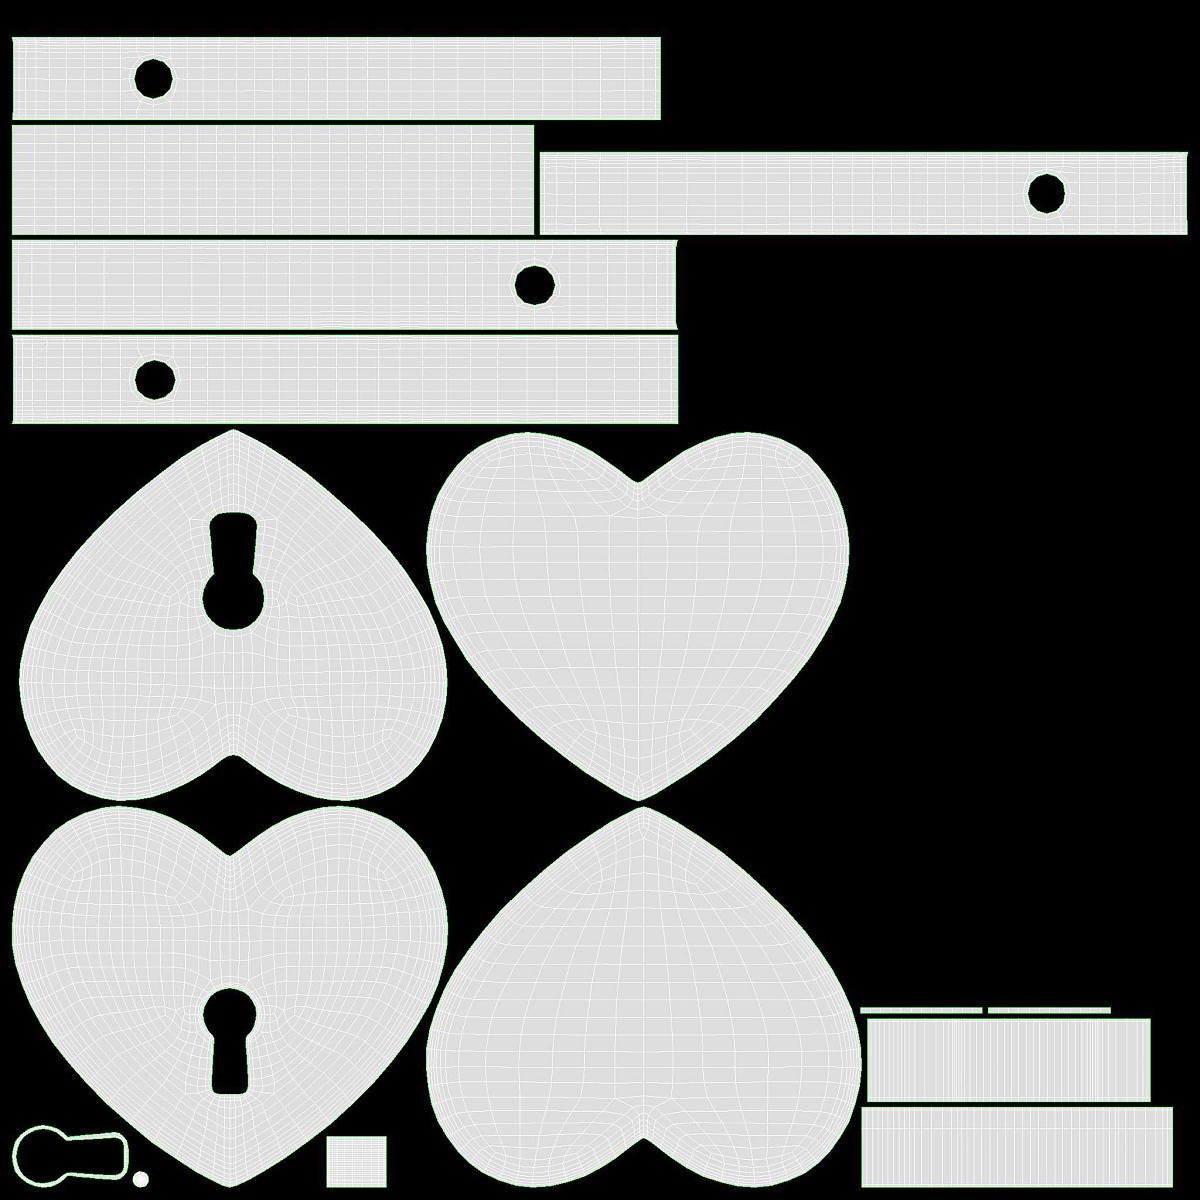 Padlock Heart-shaped Closed